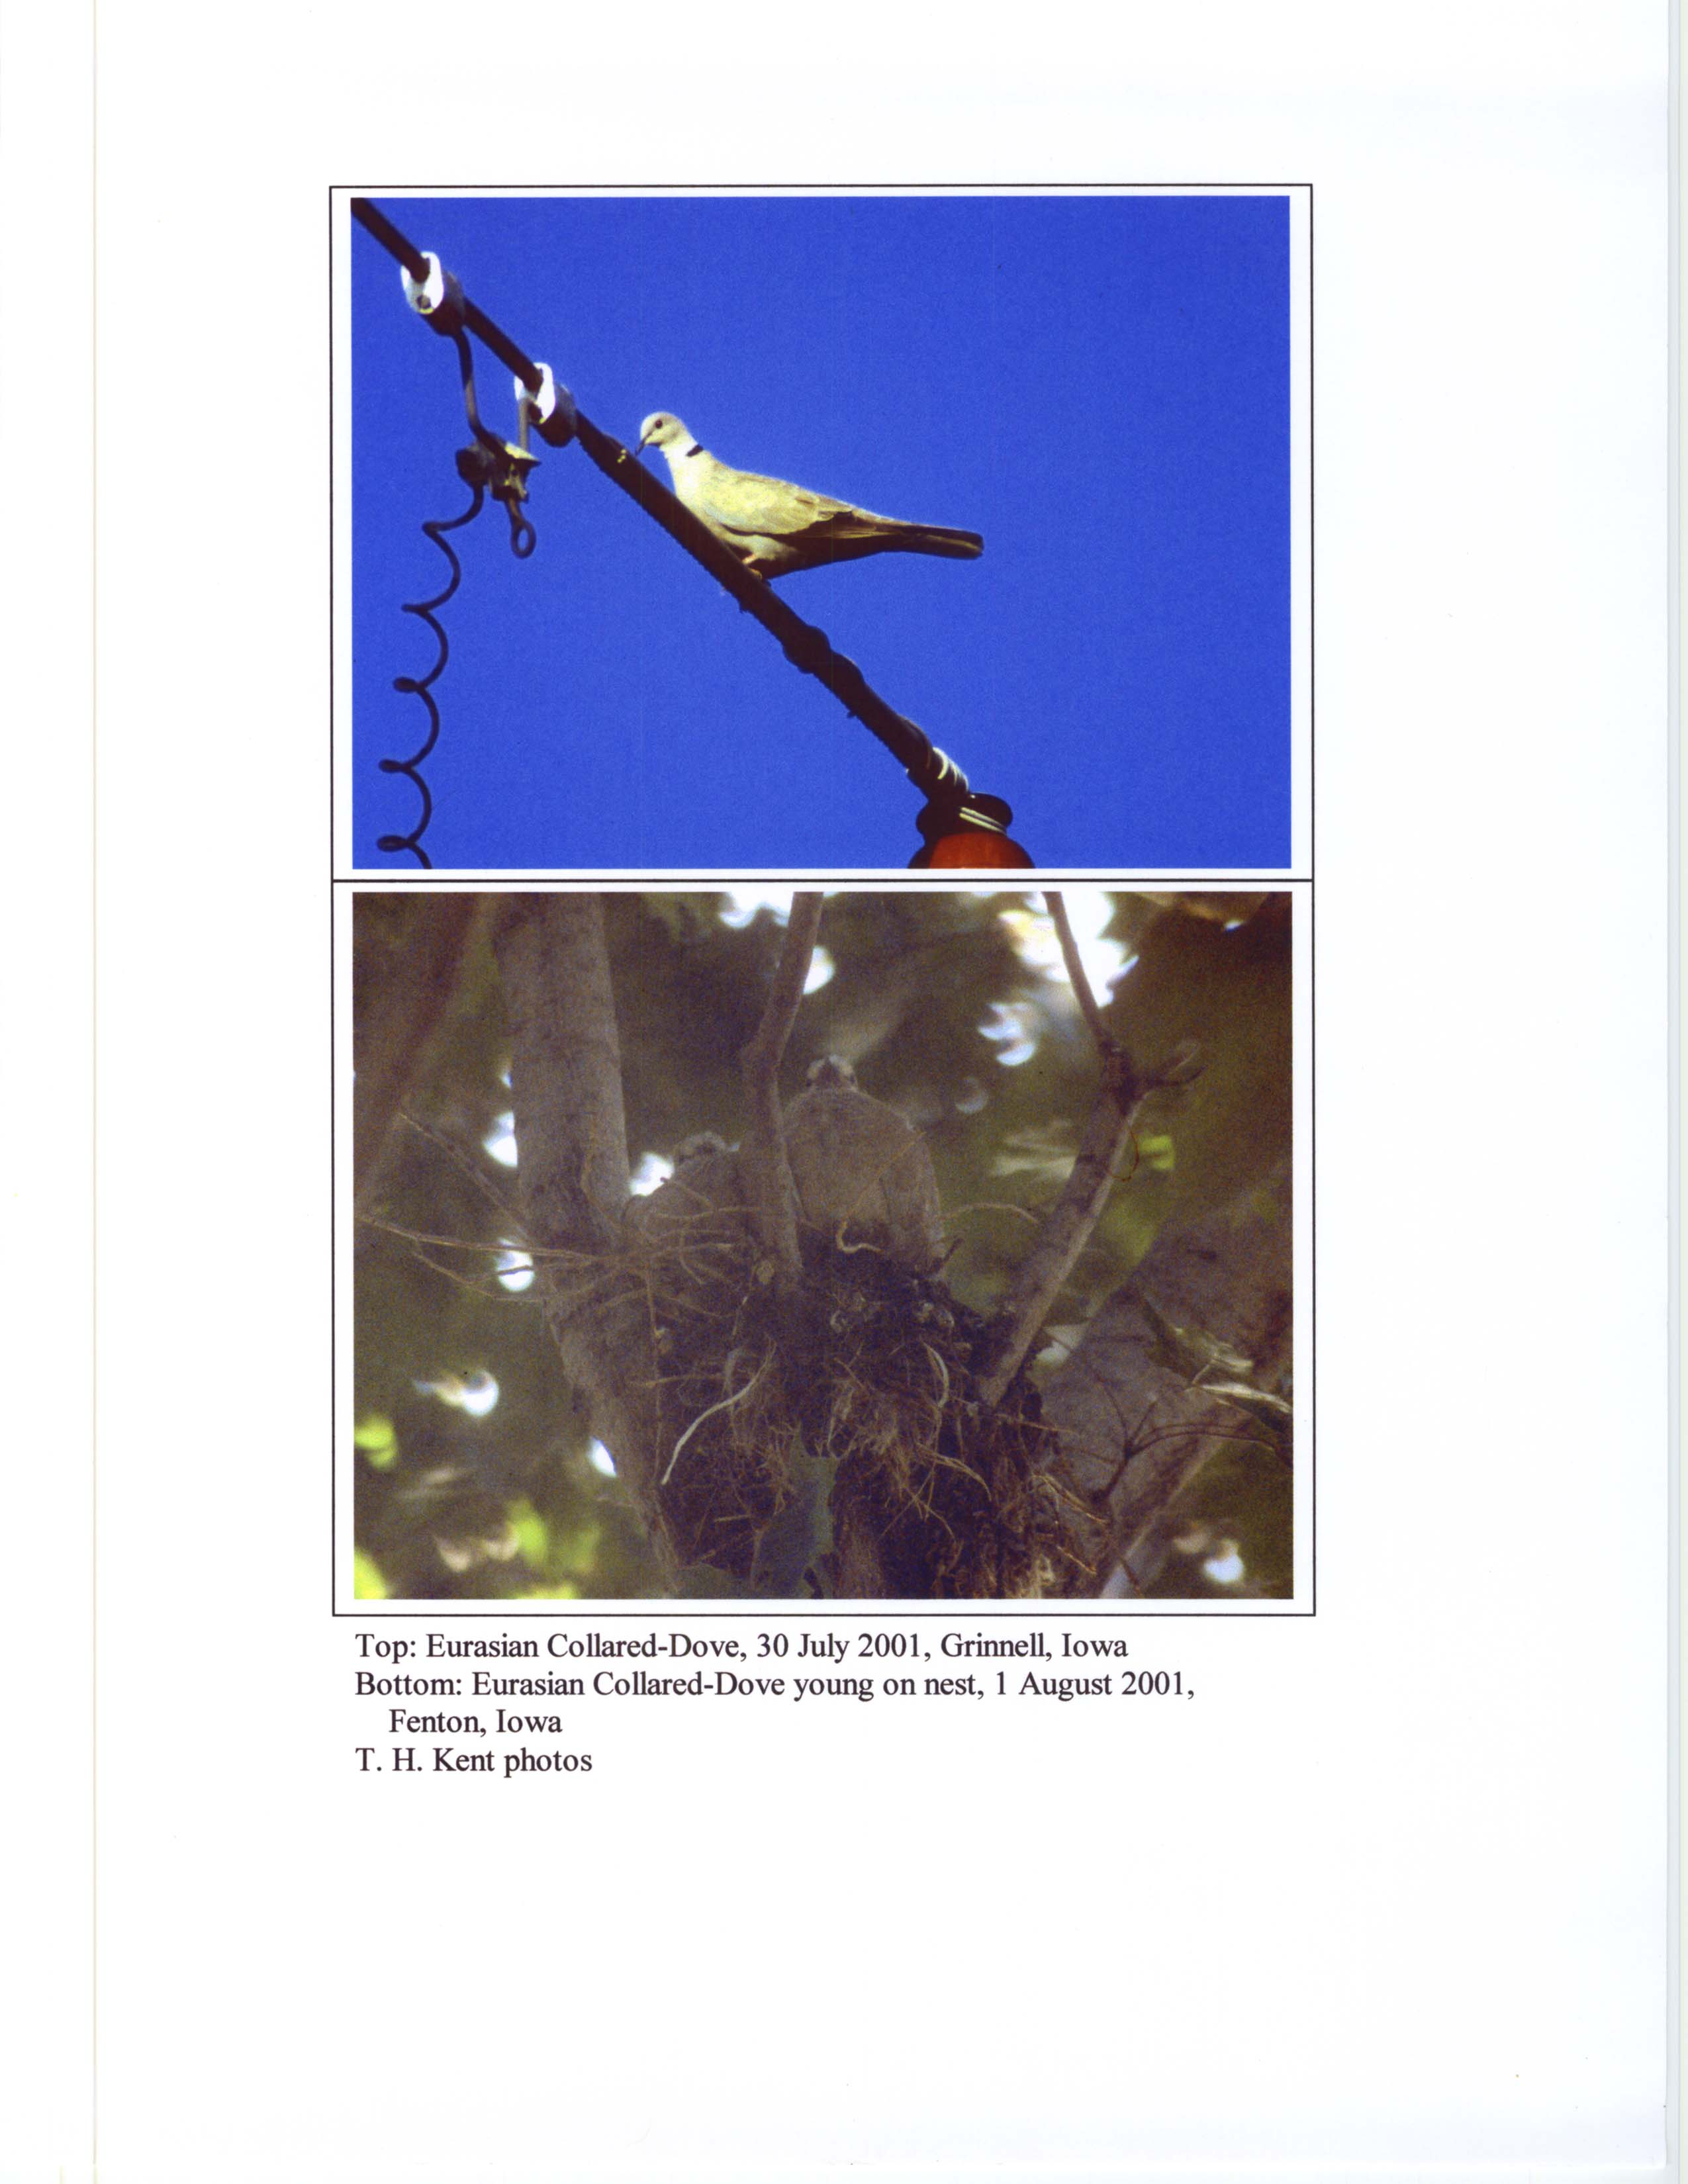 Photographs of an Eurasian Collard Dove, summer 2001